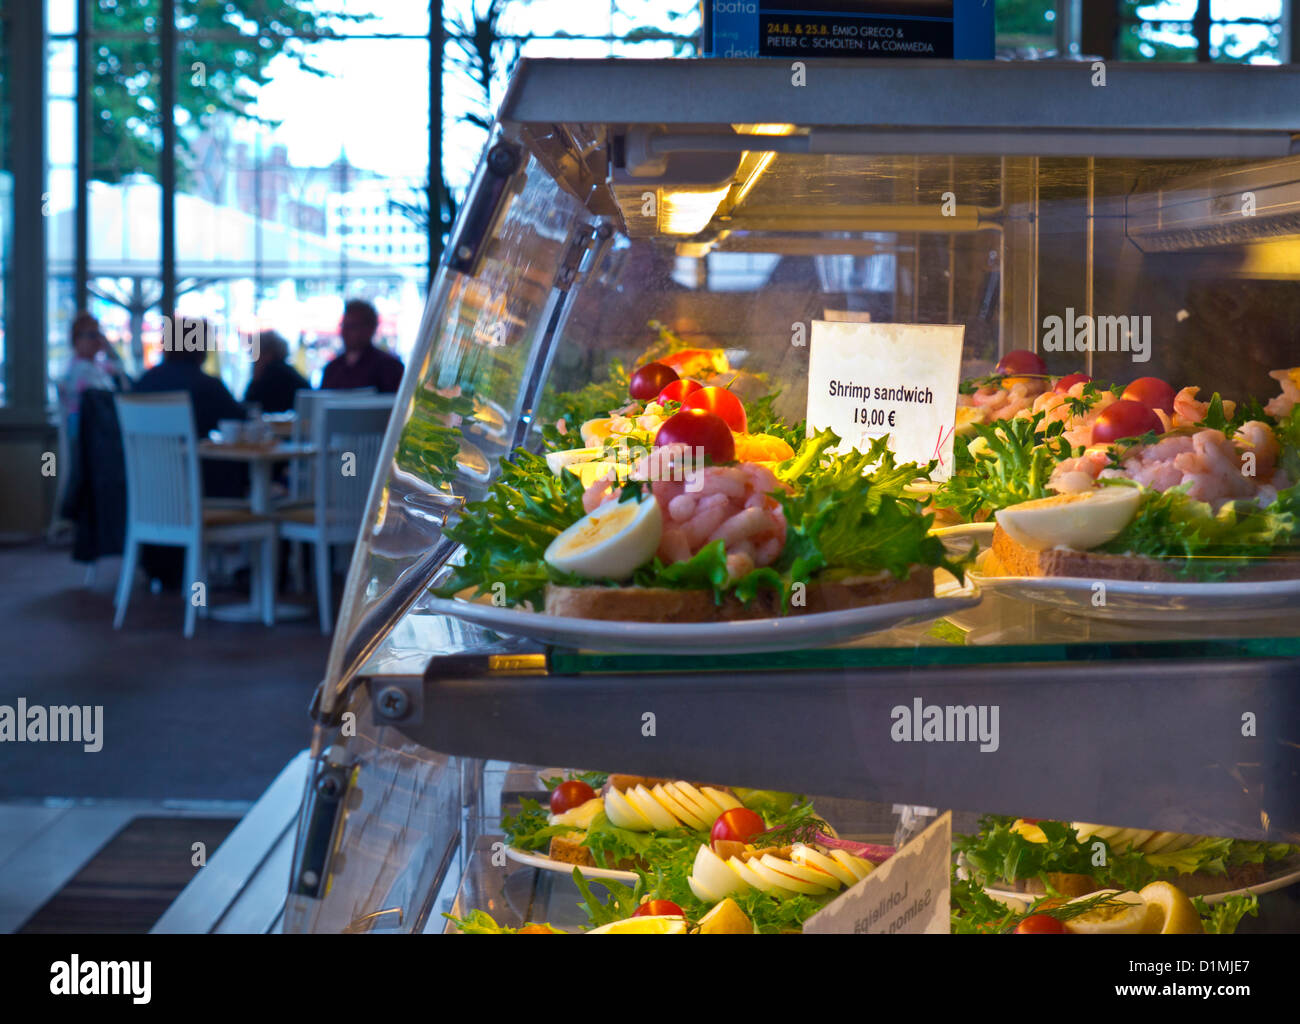 LEBENSMITTELCAFE PREIS EU teure Garnelen (Garnelen) Sandwich auf dem Display zum Verkauf in europäischen touristischen Zentrum Café für überhöhte Ticketpreis von 19 Euro Stockfoto